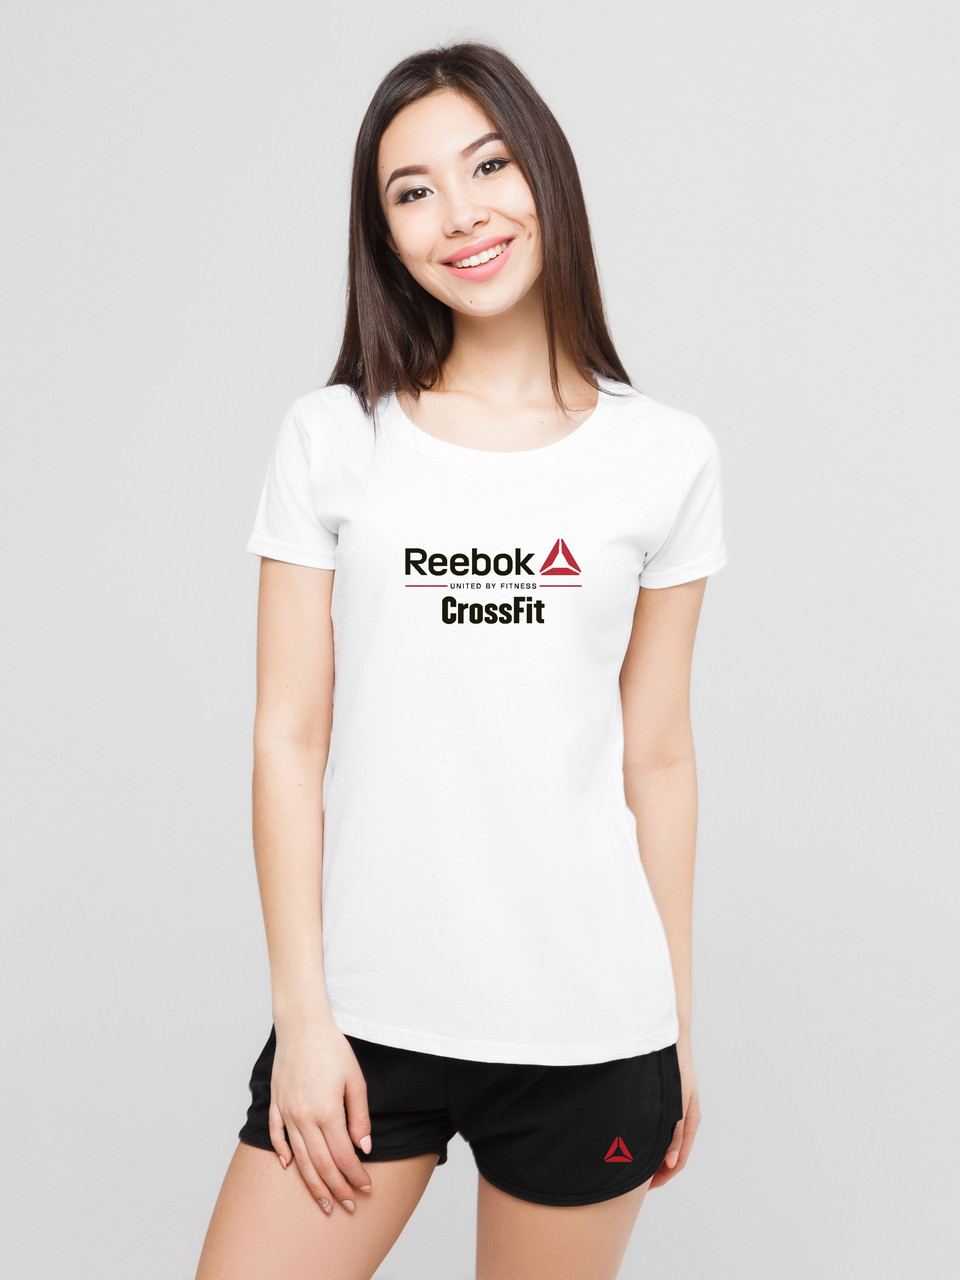 Жіночий комплект Reebok Crossfit футболка+шорти, рібок